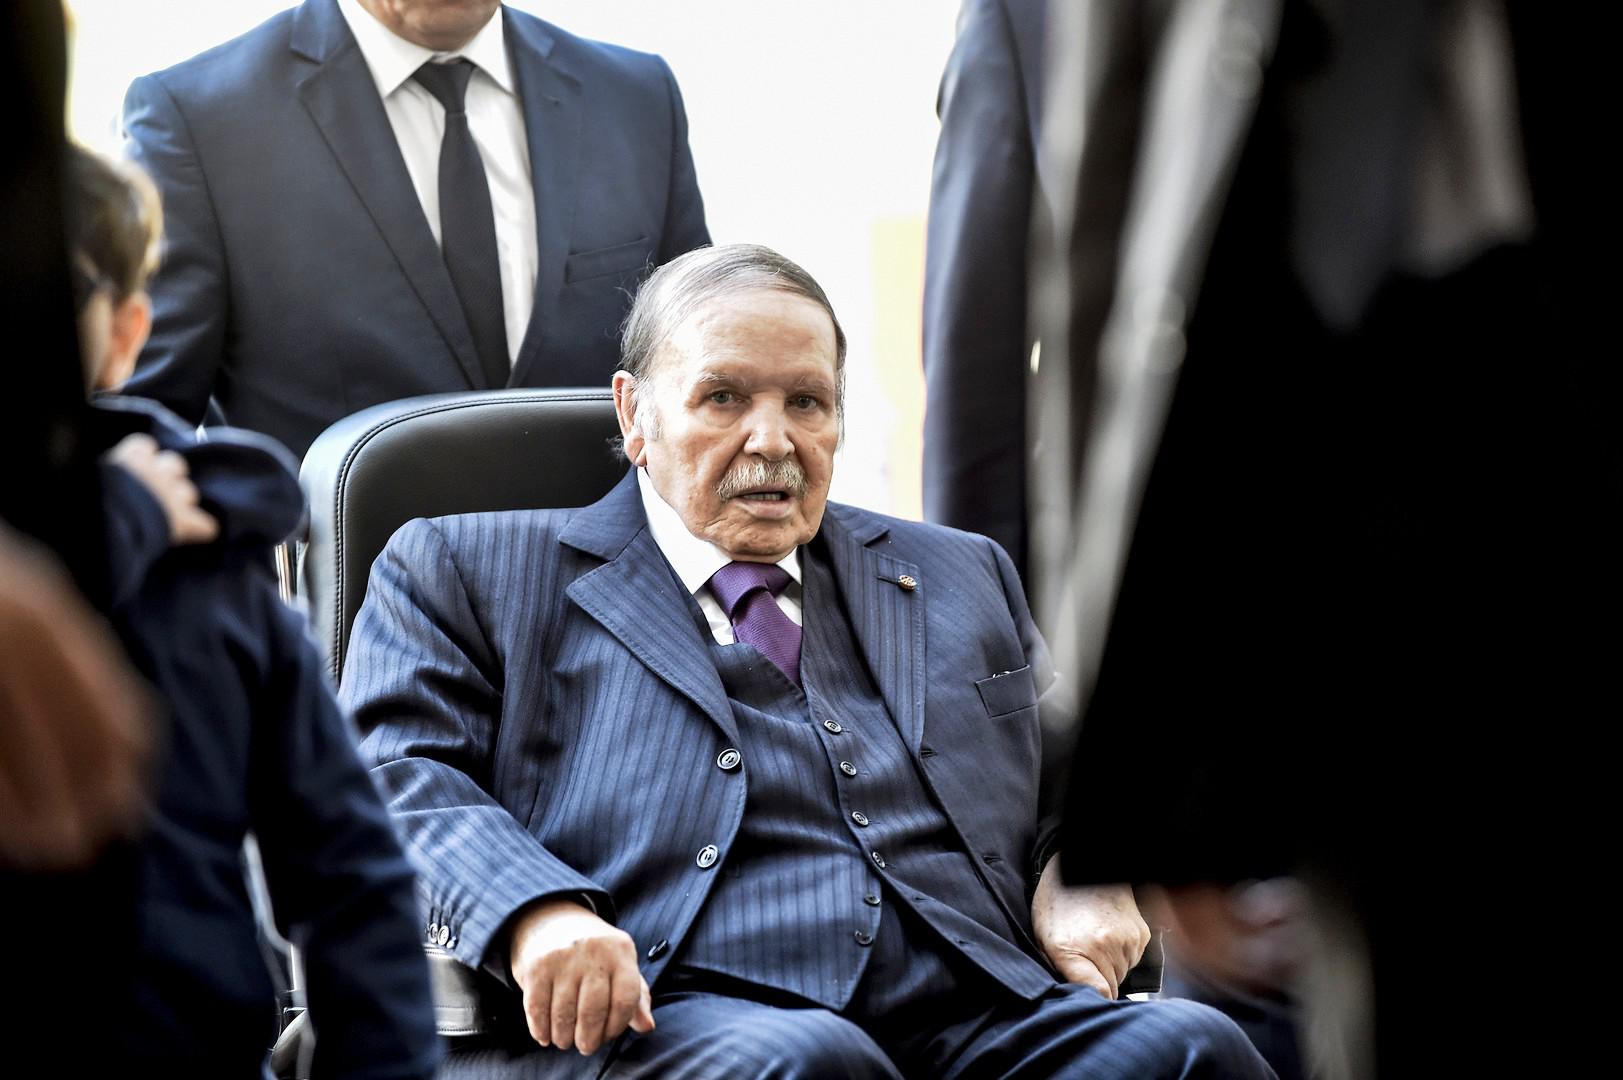 الرئيس الجزائري عبدالعزيز بوتفليقة يتنقل على كرسي متحرك منذ اصابته بجلطة دماغية في 2013